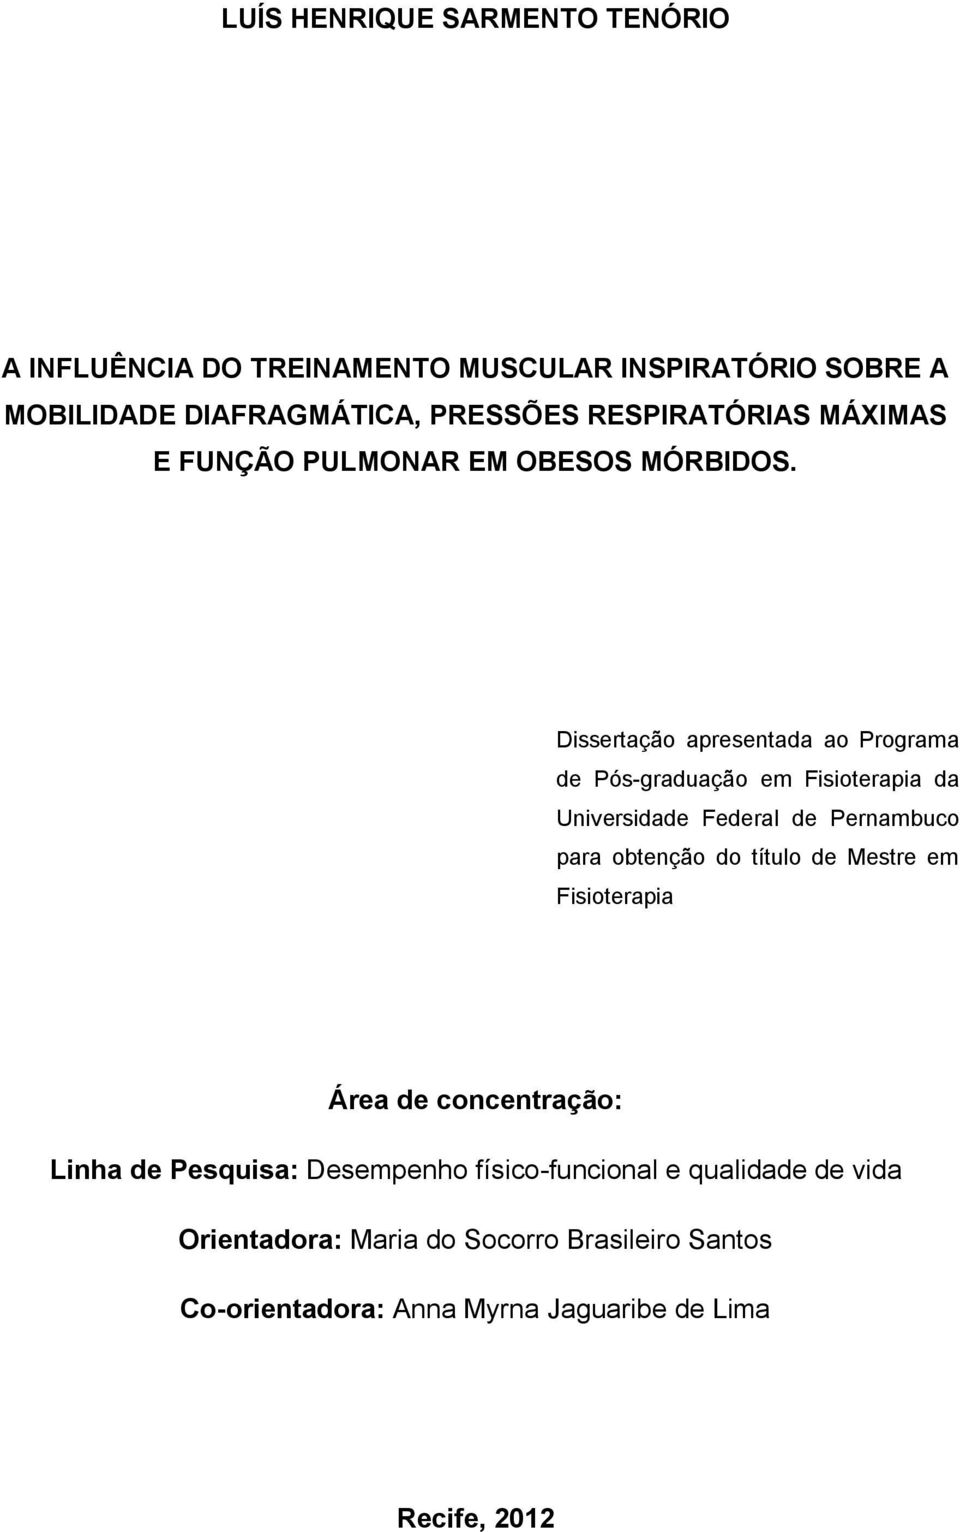 Dissertação apresentada ao Programa de Pós-graduação em Fisioterapia da Universidade Federal de Pernambuco para obtenção do título de